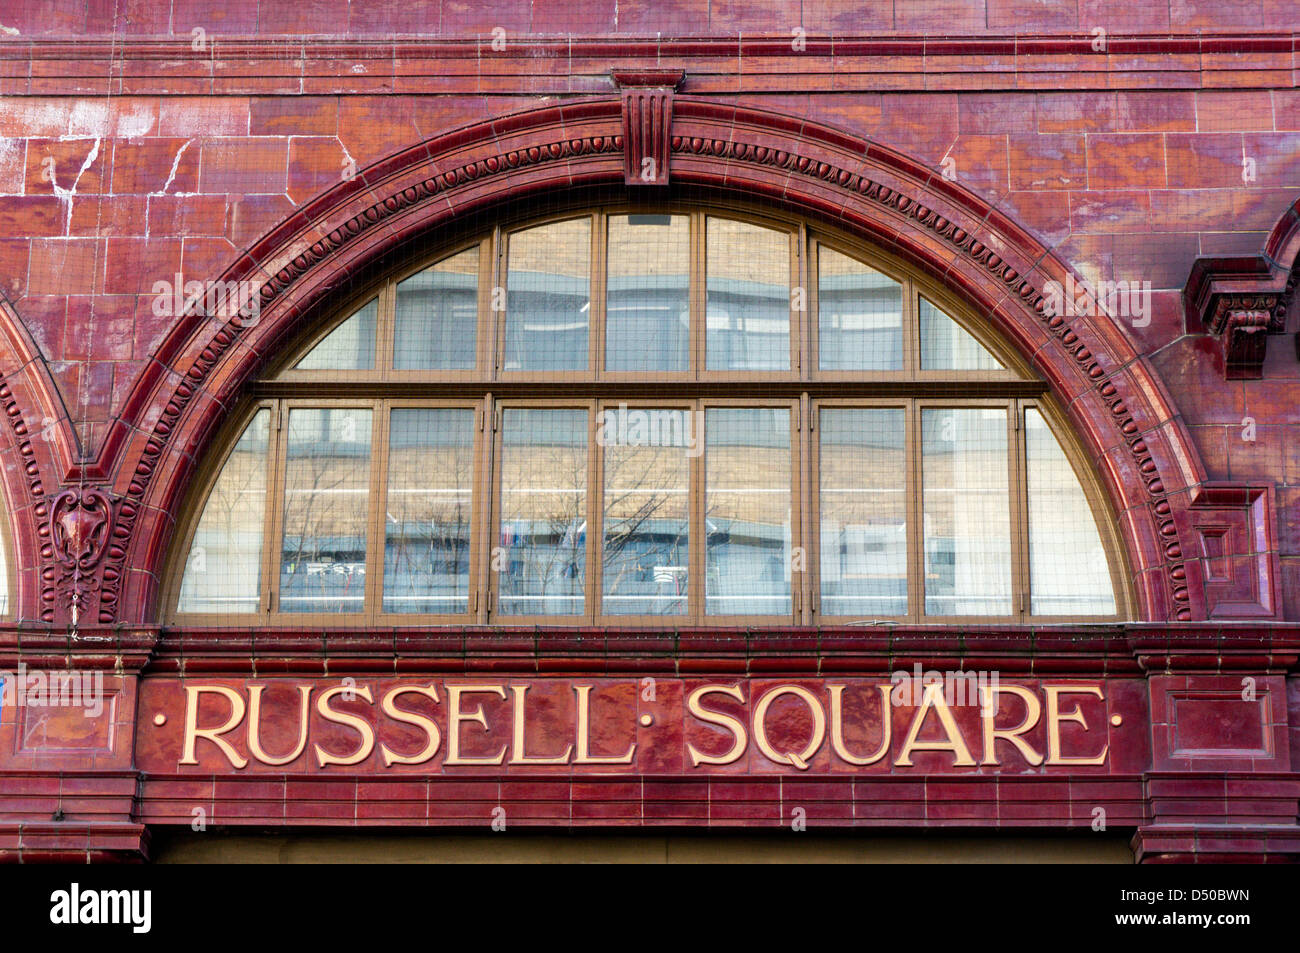 Der Name des Russell Square u-Bahnstation auf roten Ziegeln des Gebäudes angezeigt. Stockfoto